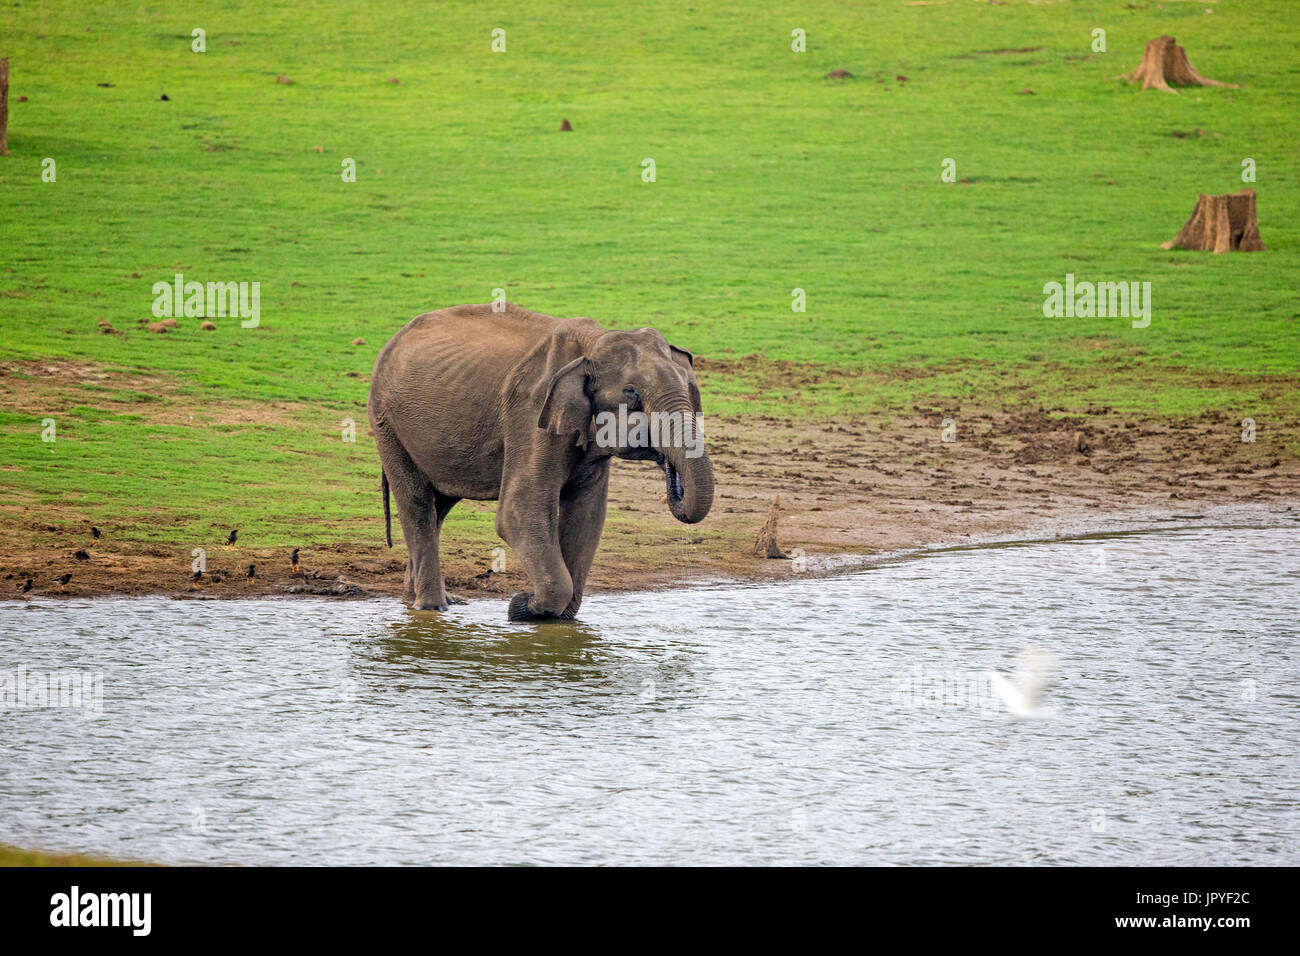 L'éléphant d'Asie au bord de l'eau - Inde Nagarhole Banque D'Images